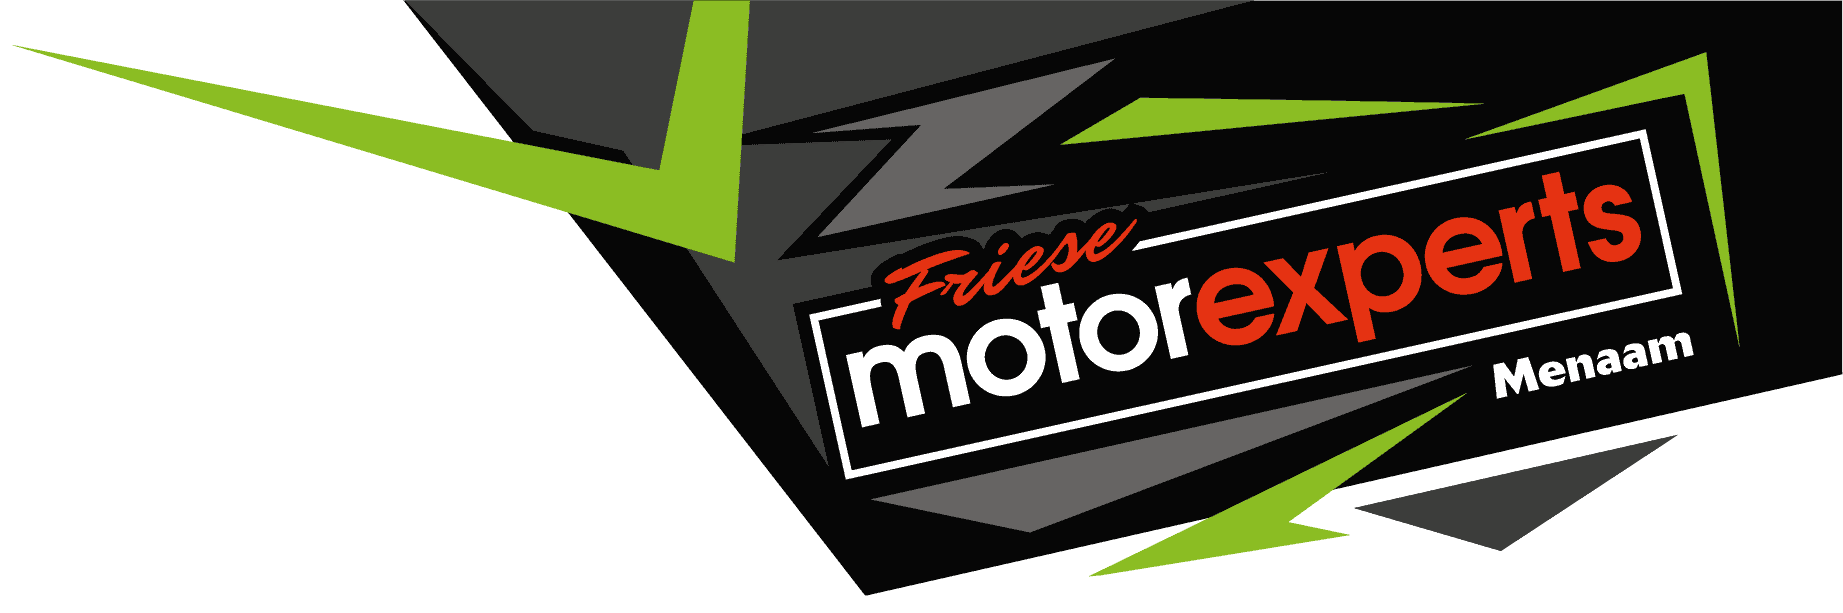 Friese-Motorexperts-Logo